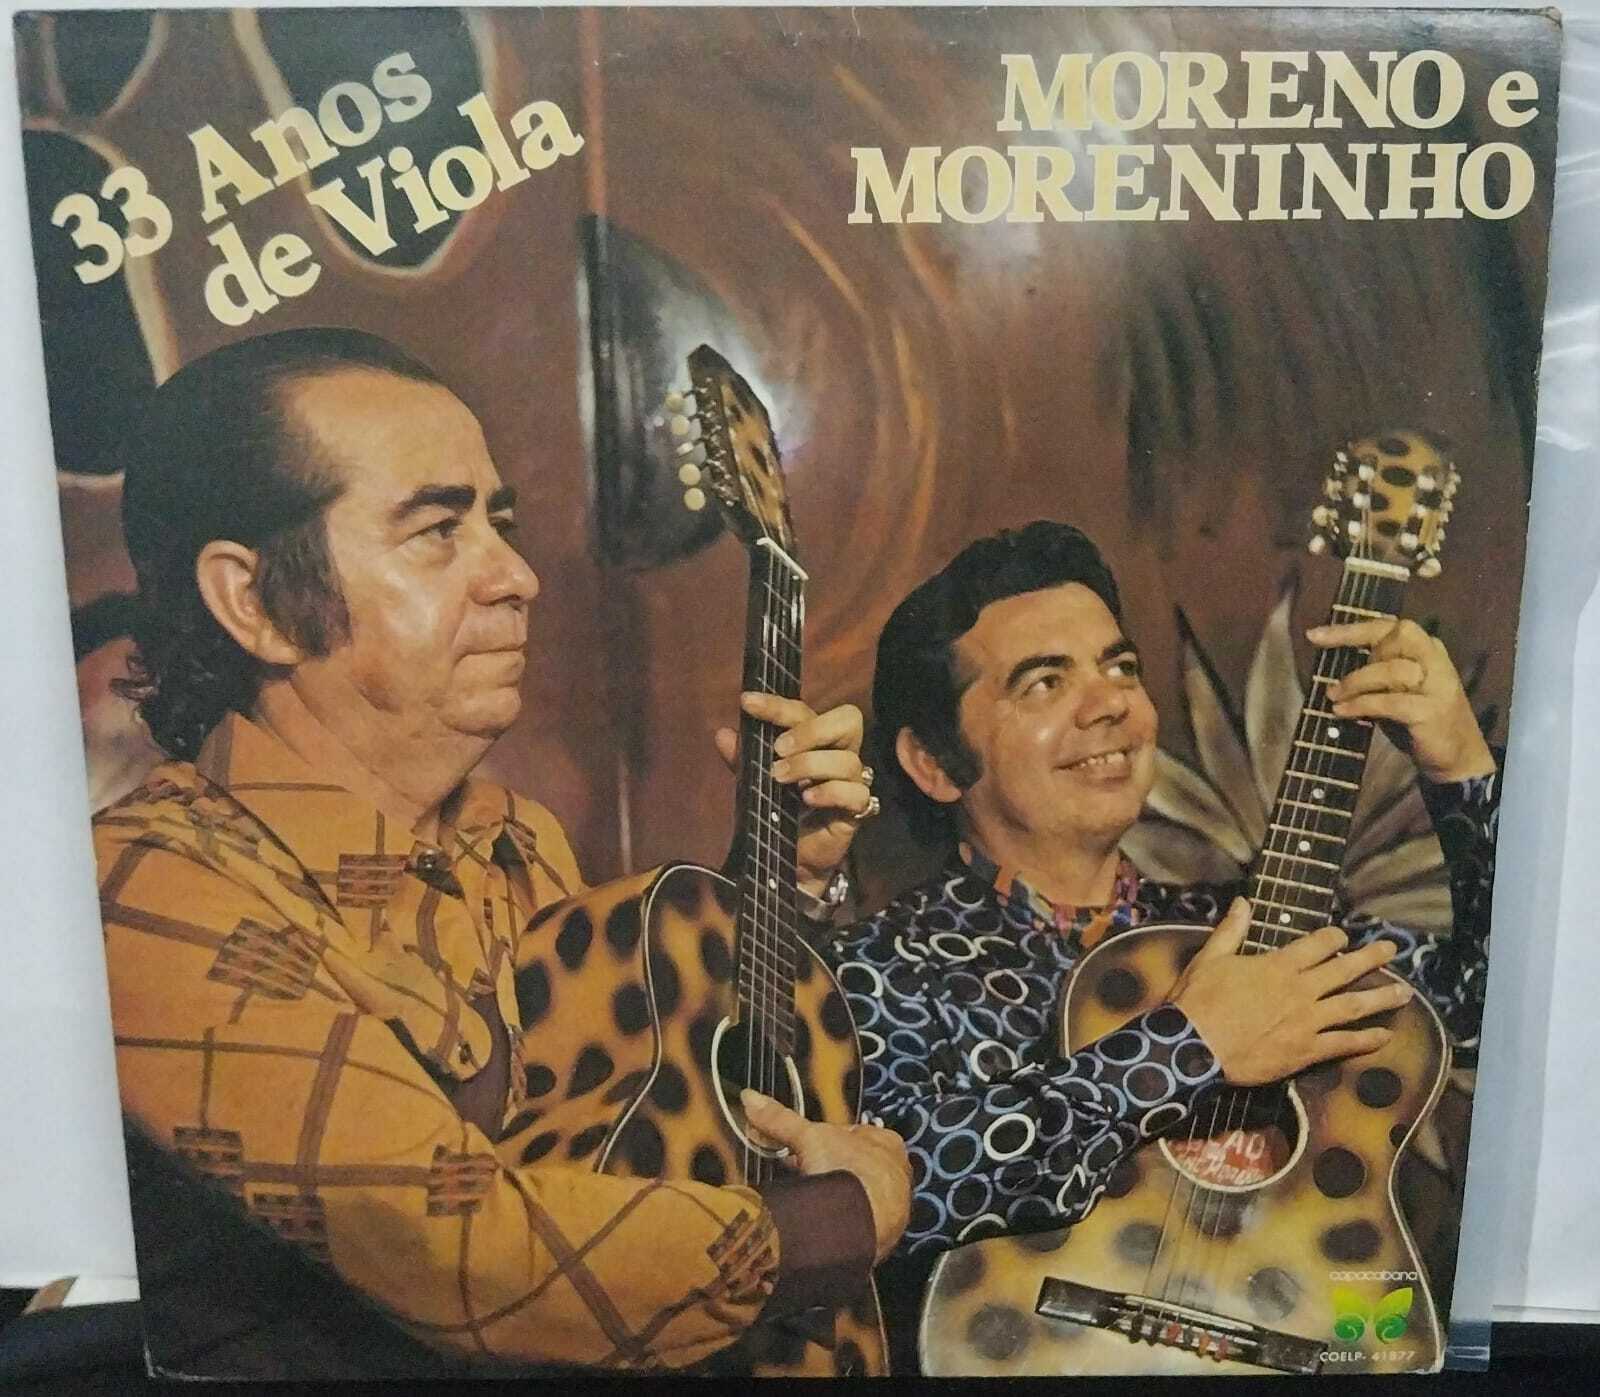 Vinil - Moreno E Moreninho - 33 Anos de Viola